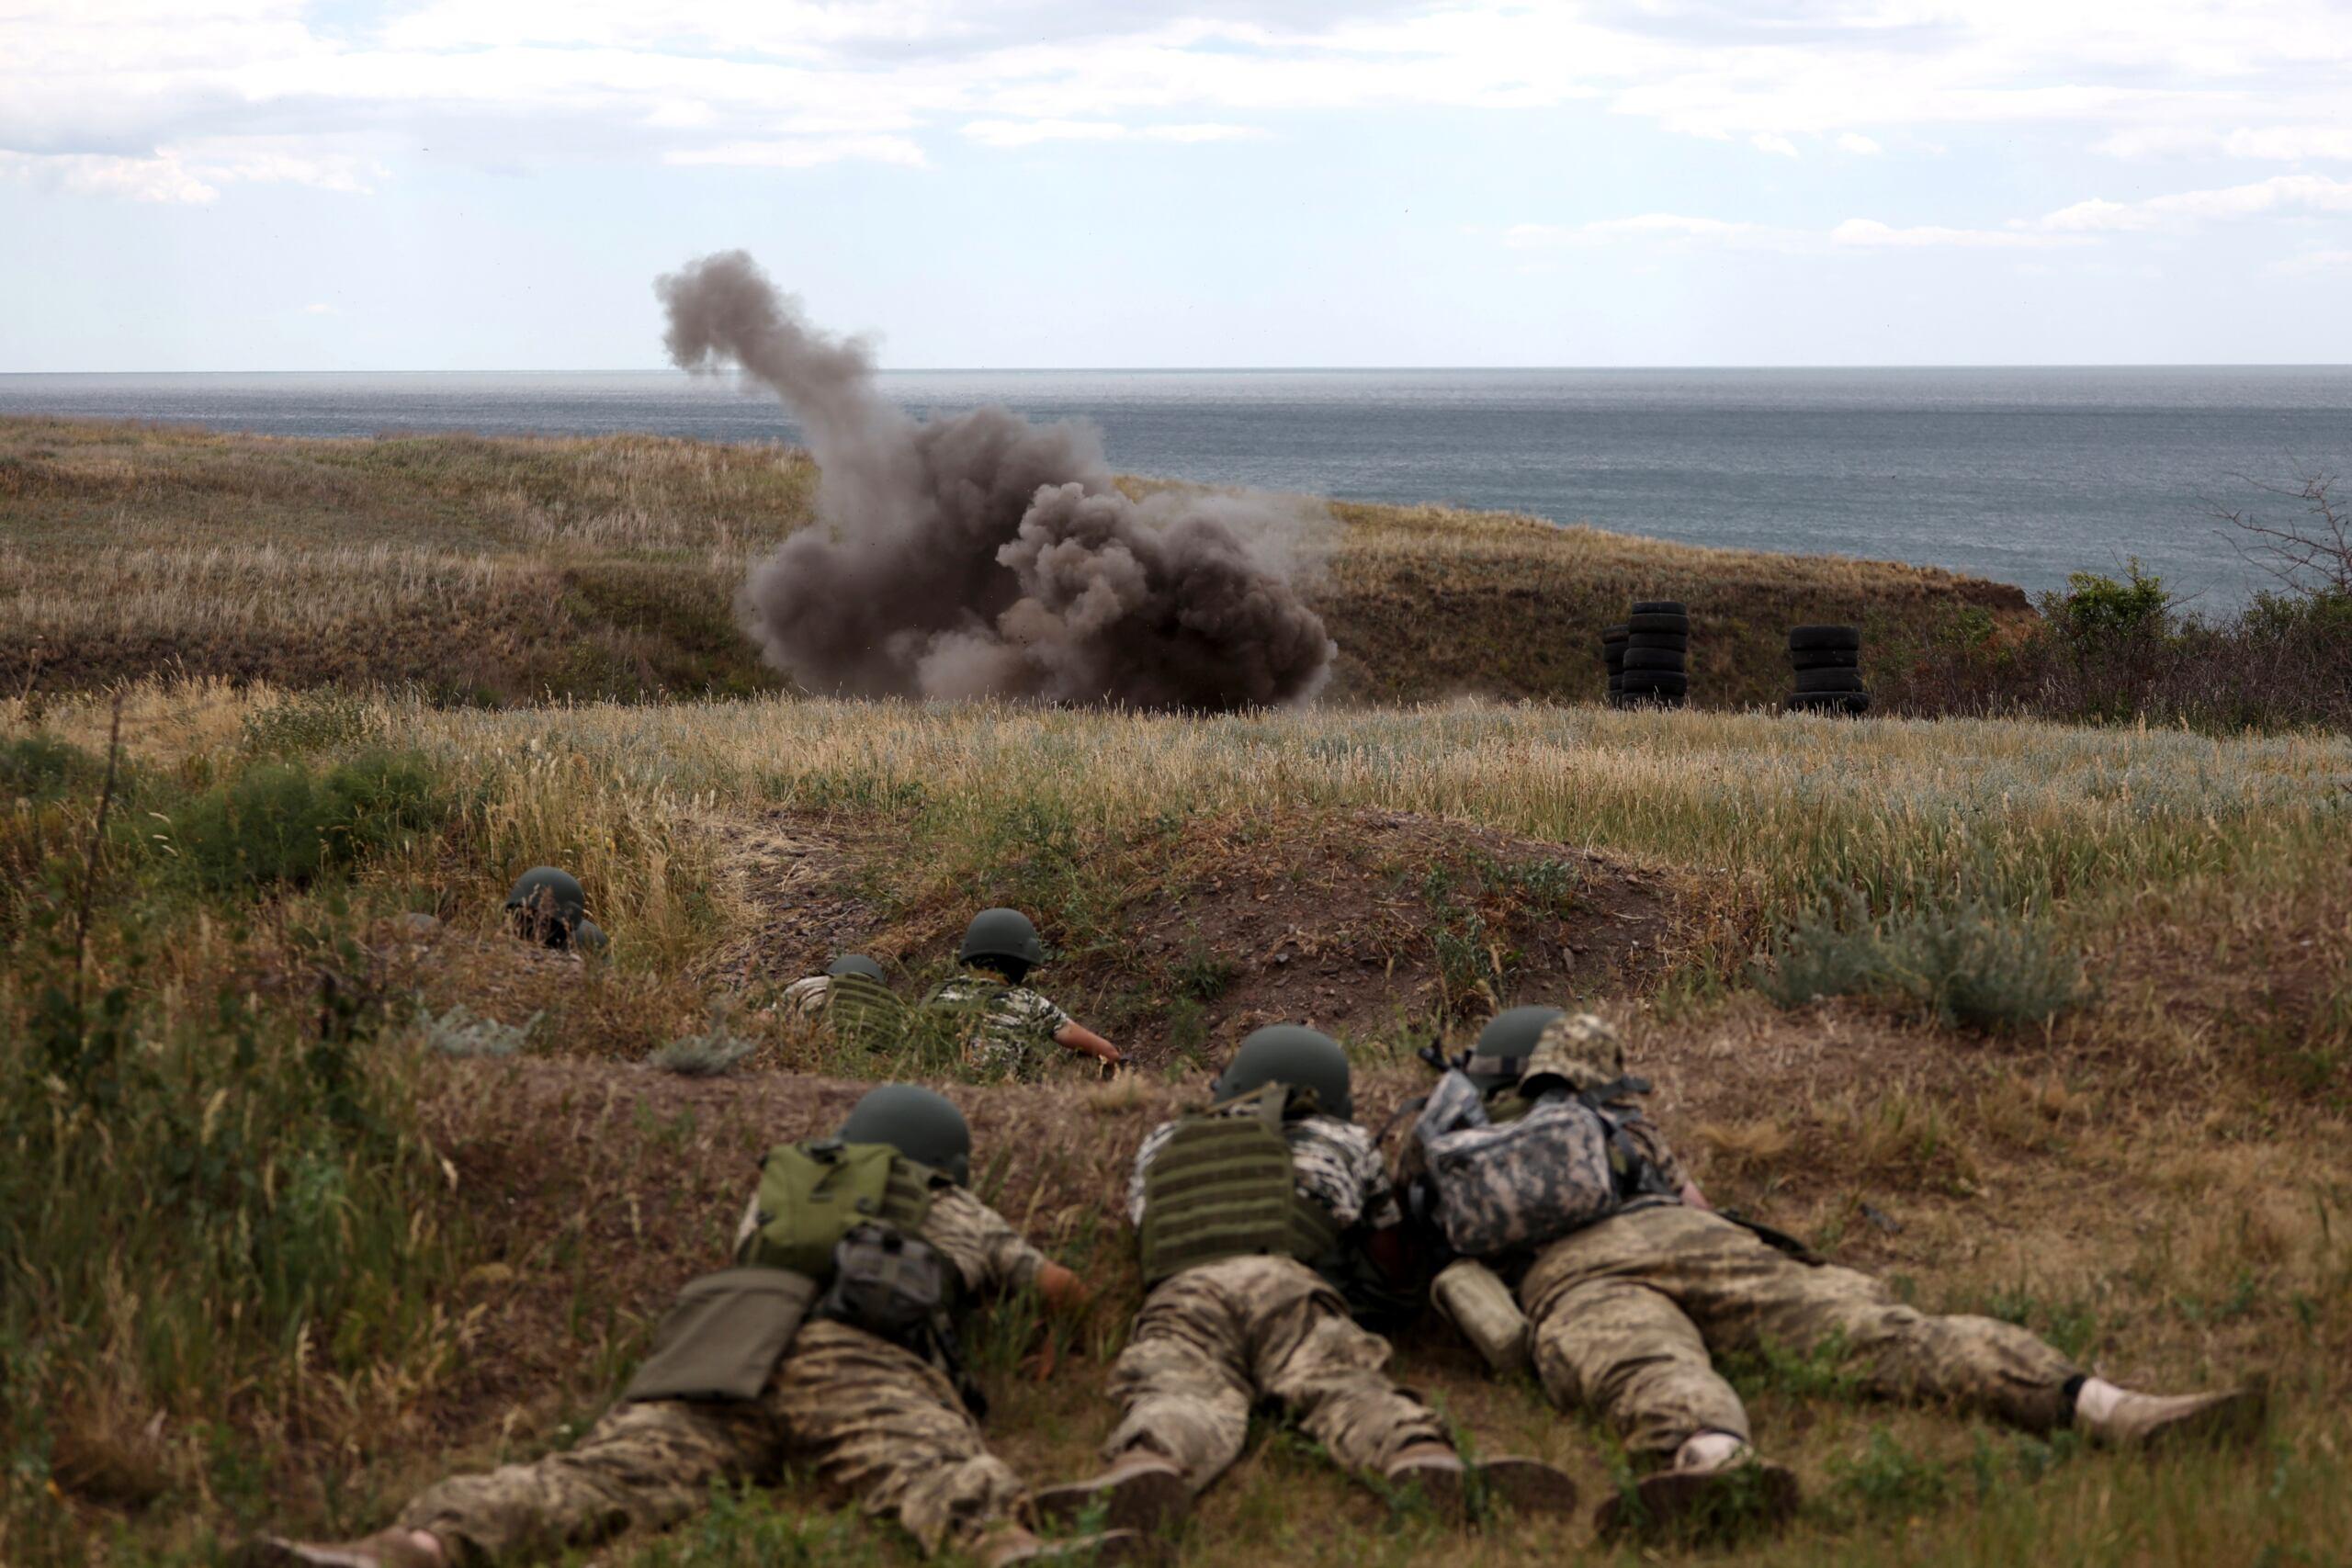 22 czerwca 2022 r. żołnierze 126 Brygady Terytorialnej Sił Zbrojnych Ukrainy biorą udział w ćwiczeniach wojskowych w rejonie Odessy, w związku z inwazją militarną Rosji na Ukrainę.